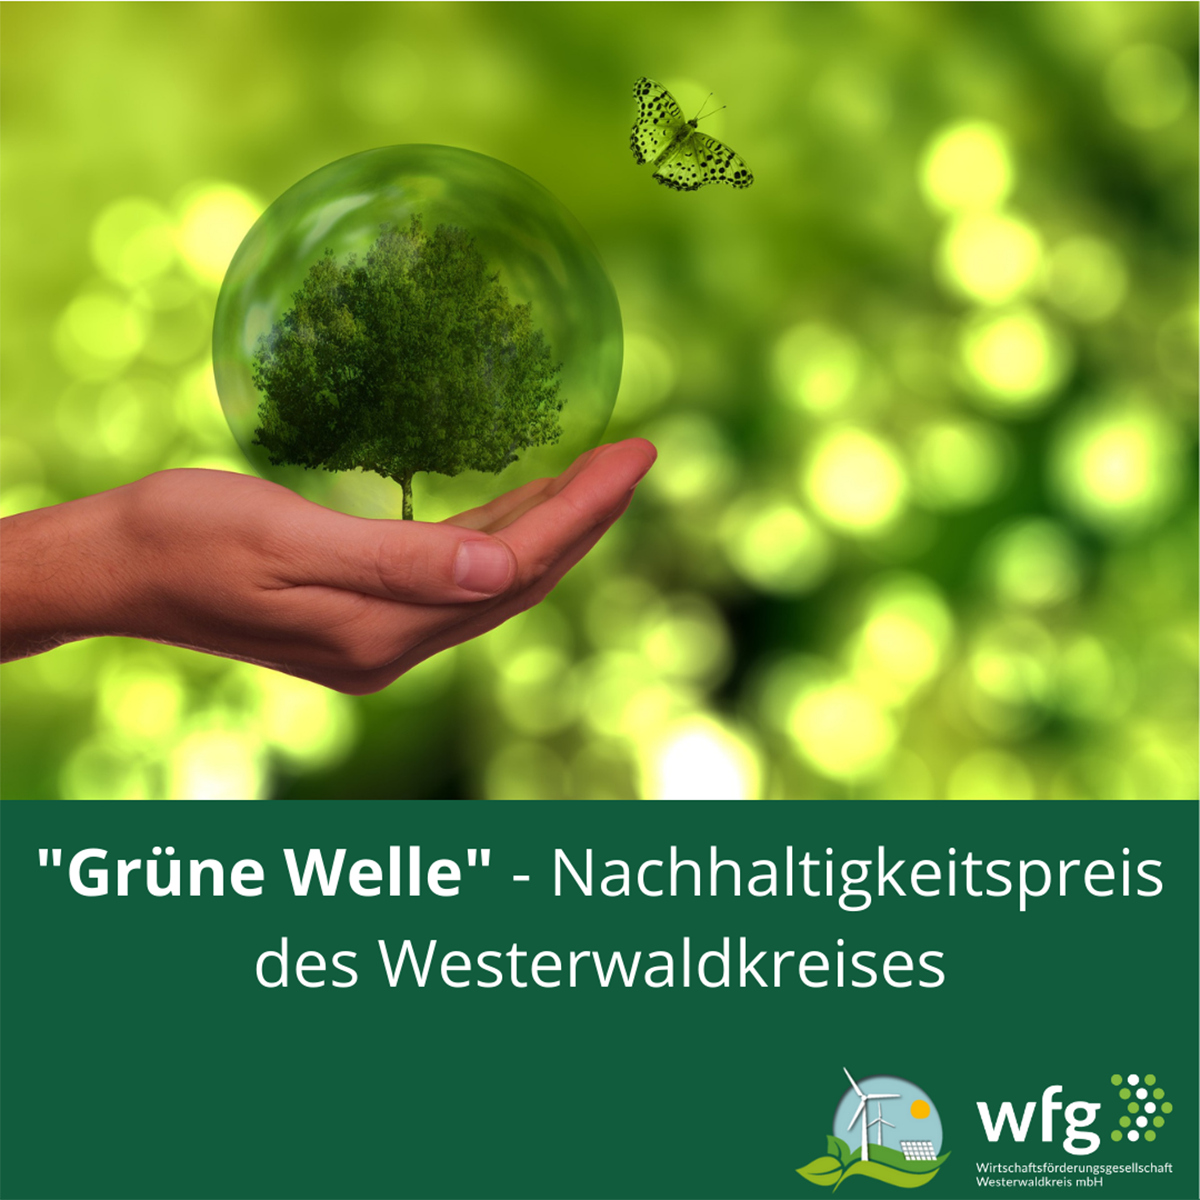 "Grüne Welle" - Nachhaltigkeitspreis des Westerwaldkreises